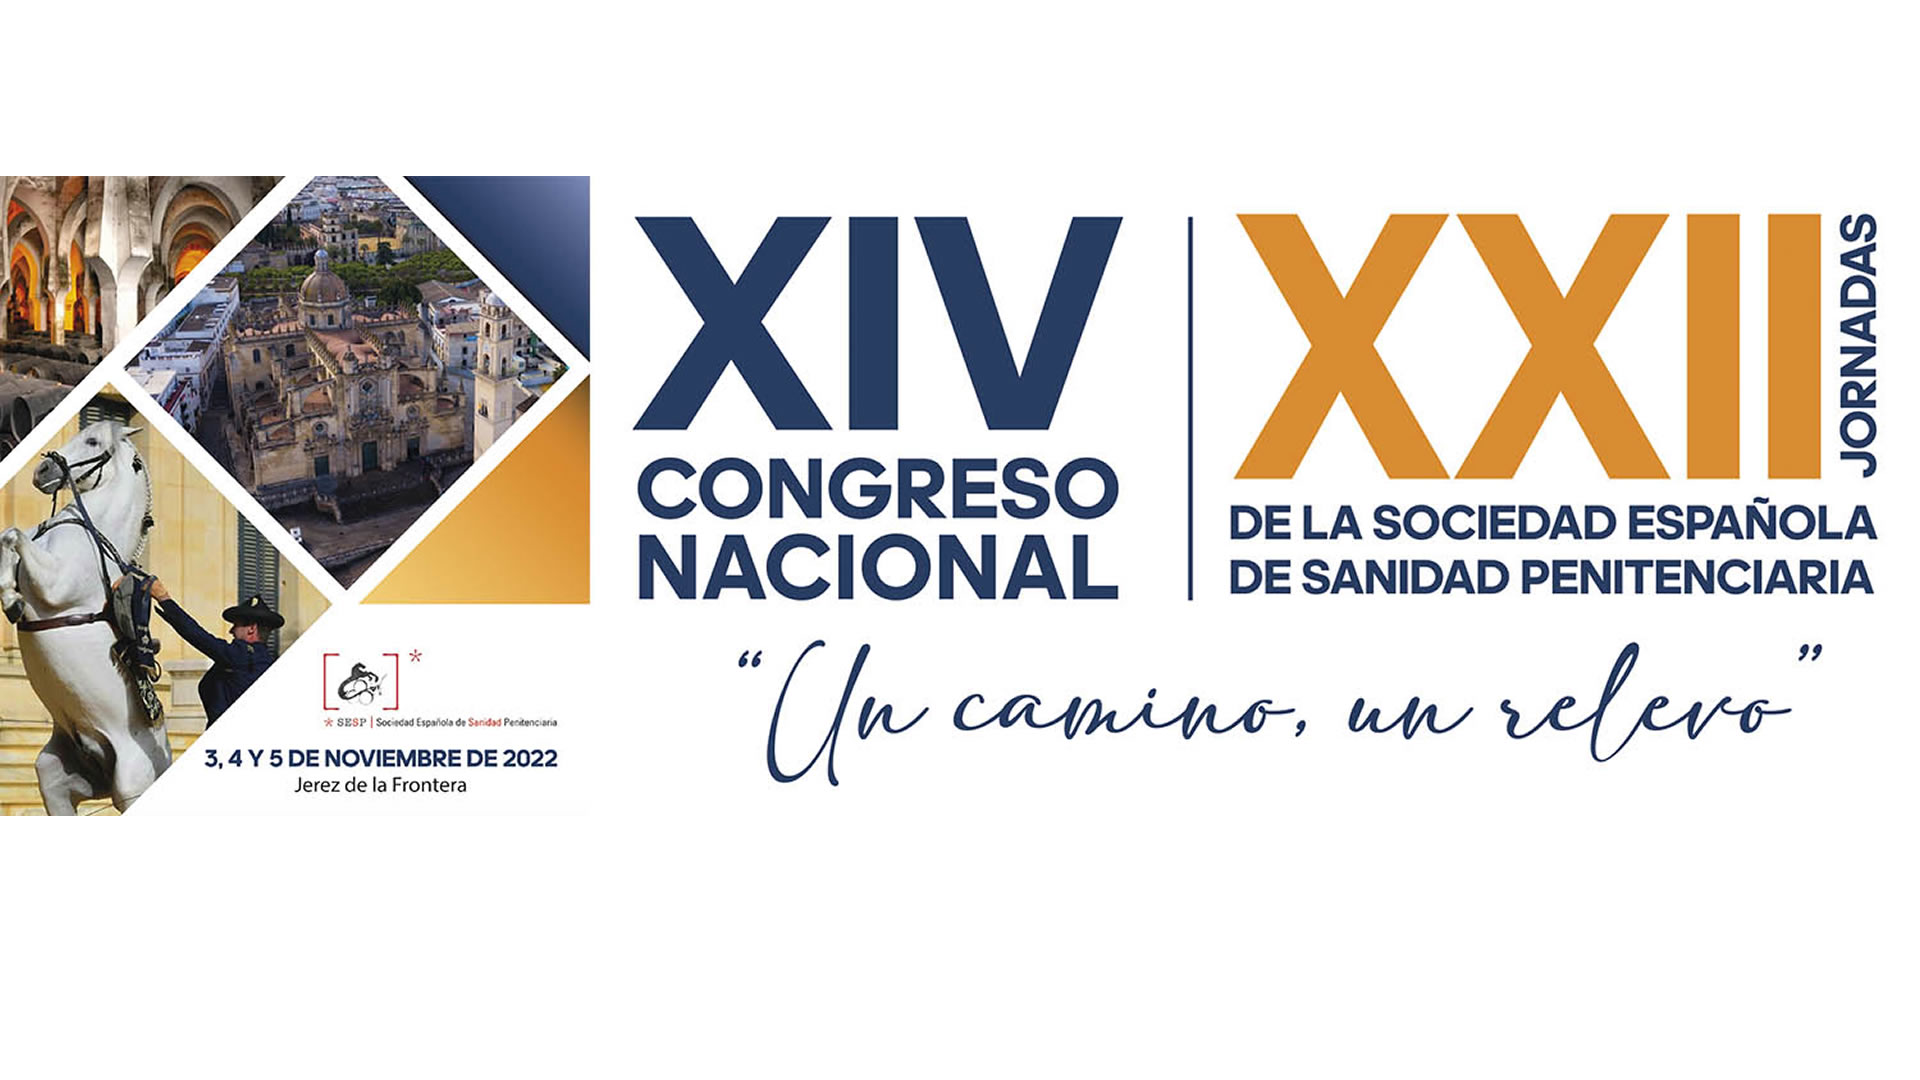 Consejo Andaluz de Colegios de Enfermería - Jerez acoge el XIV Congreso Nacional de la Sociedad Española de Sanidad Penitenciaria